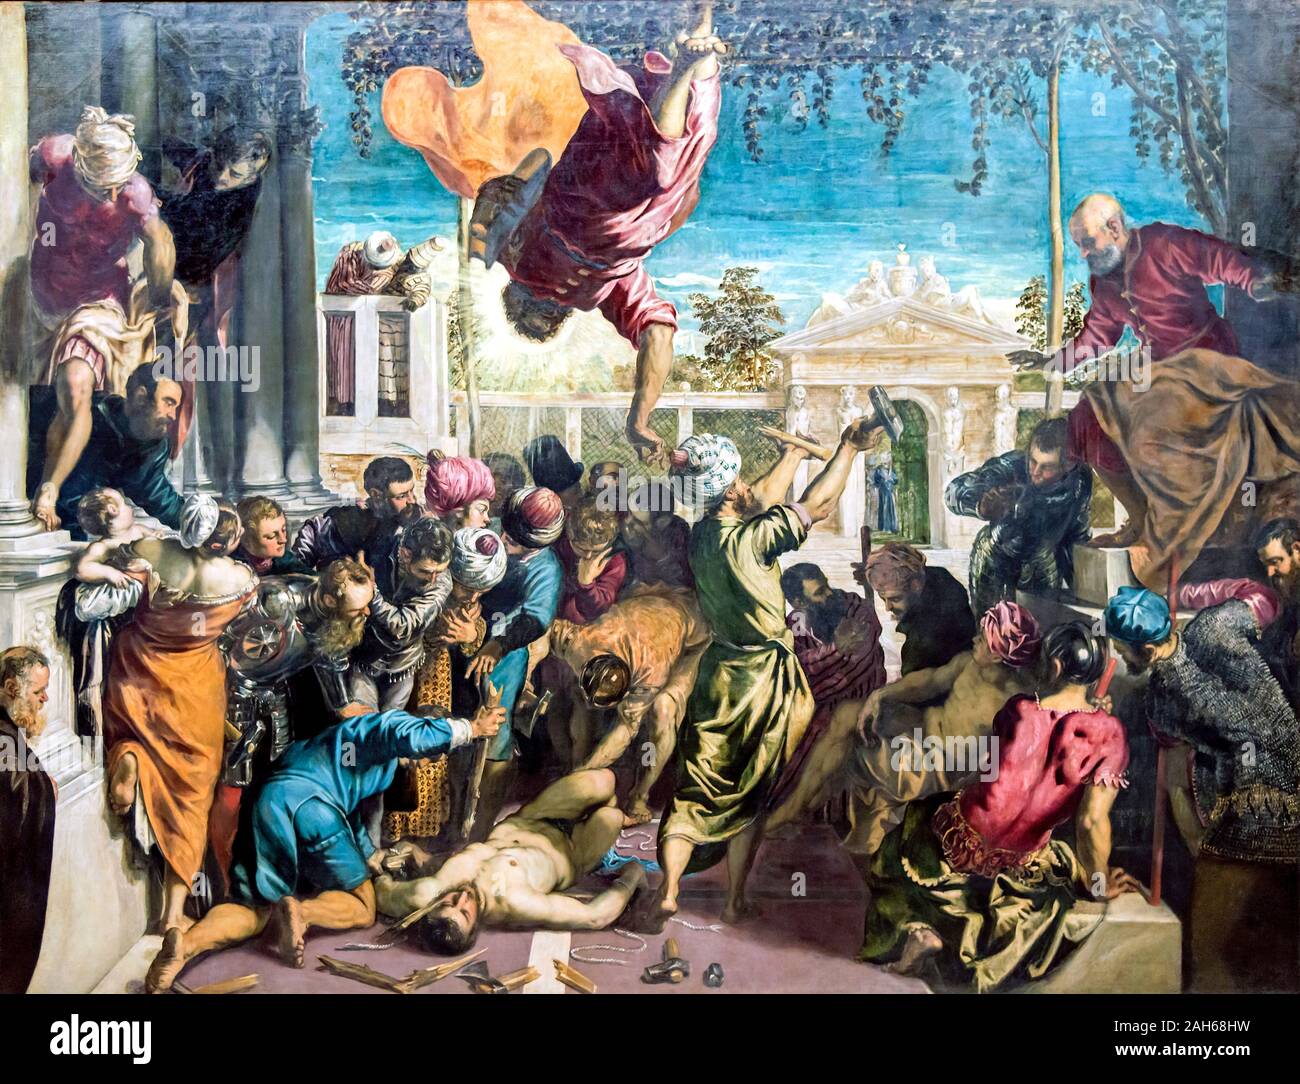 Accademia - Milagro del esclavo de Tintoretto, el milagro del esclavo (también conocido como El milagro de San Marcos, 1548), un cuadro pintado por el artista renacentista italiano Jacopo Tintoretto. Retrata un episodio de la vida de San Marcos, Patrono de Venecia, tomado de Jacopo da Varazze la Leyenda dorada. La escena muestra, en la parte superior, el saint de intervenir para hacer invulnerable un esclavo a punto de ser martirizado por su venera Foto de stock